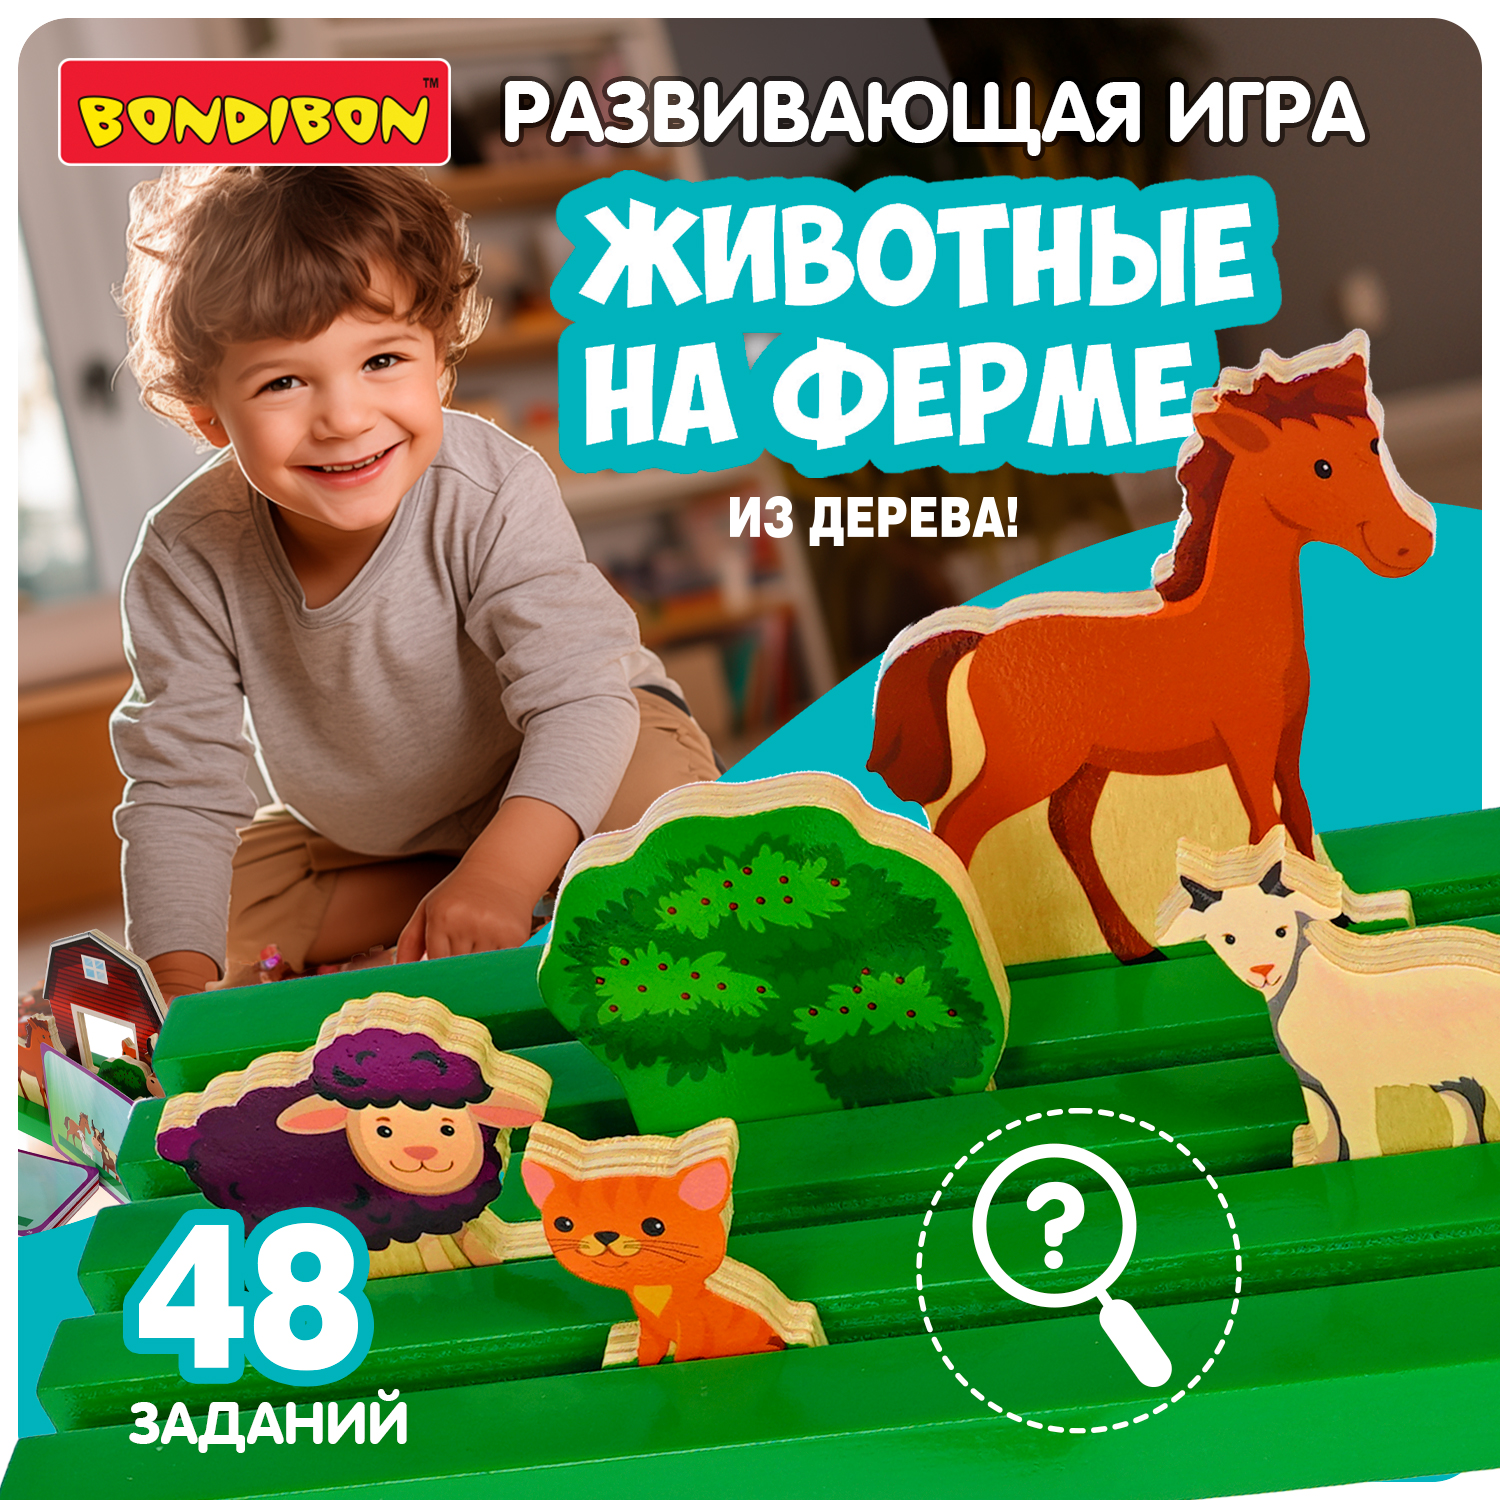 Настольная игра Bondibon Животные на ферме развивающая головоломка пазл двойной животные головоломка 12 пазлов 24 детали